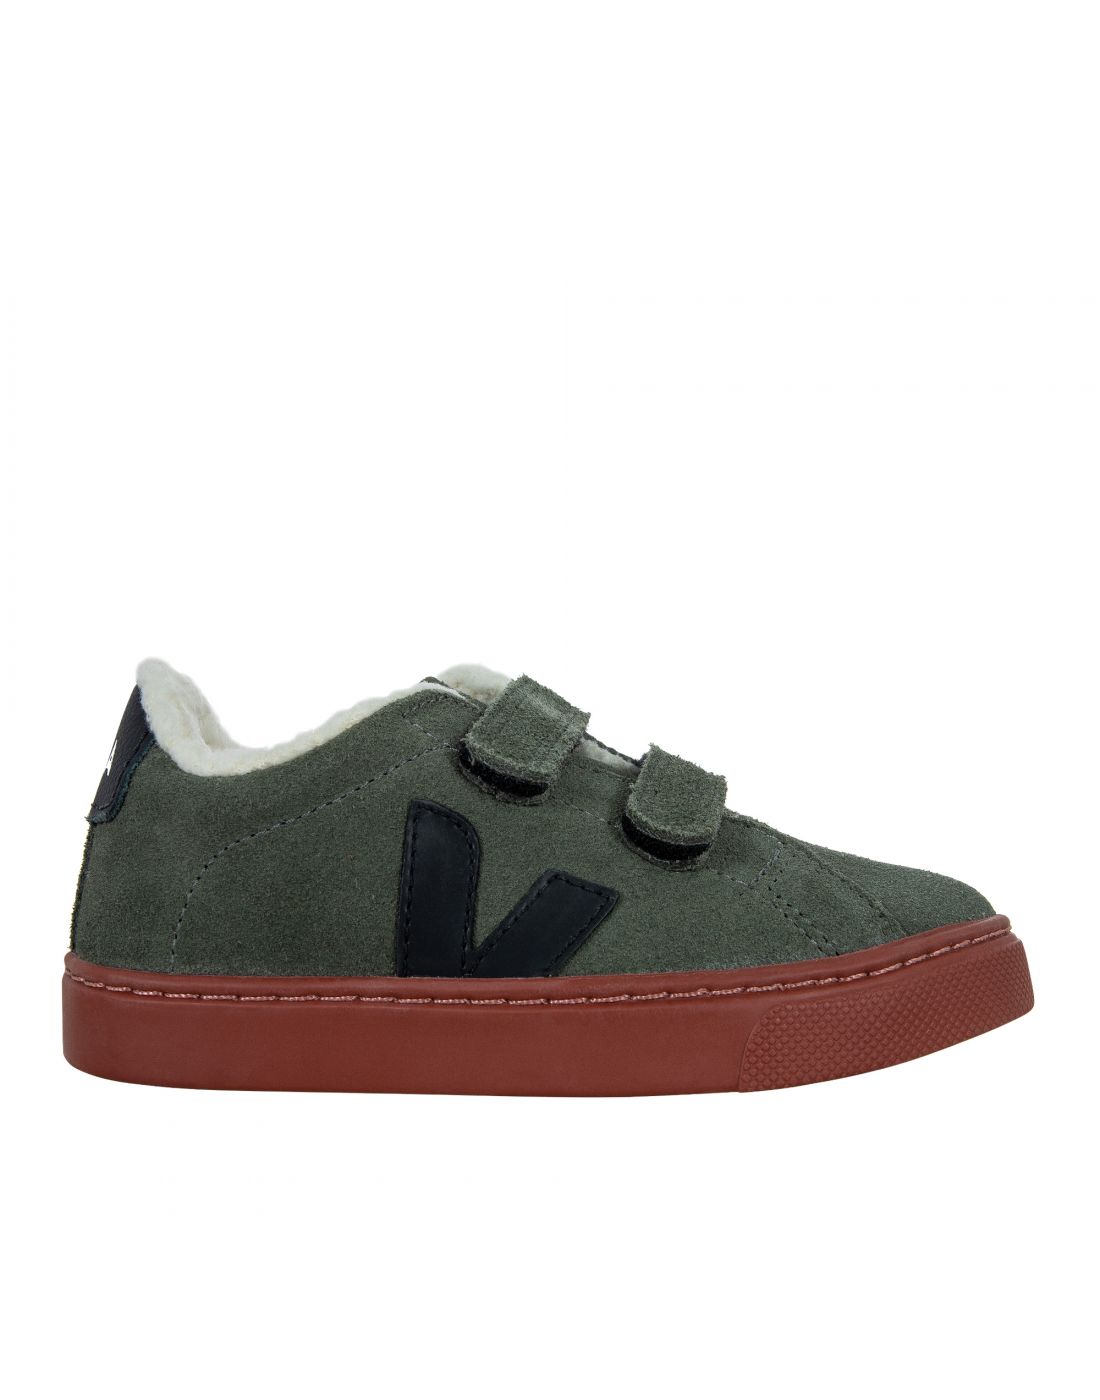 Παιδικά Παπούτσια Sneakers Veja, Veja, 23270407 | LapinKids.com | LAPIN KIDS